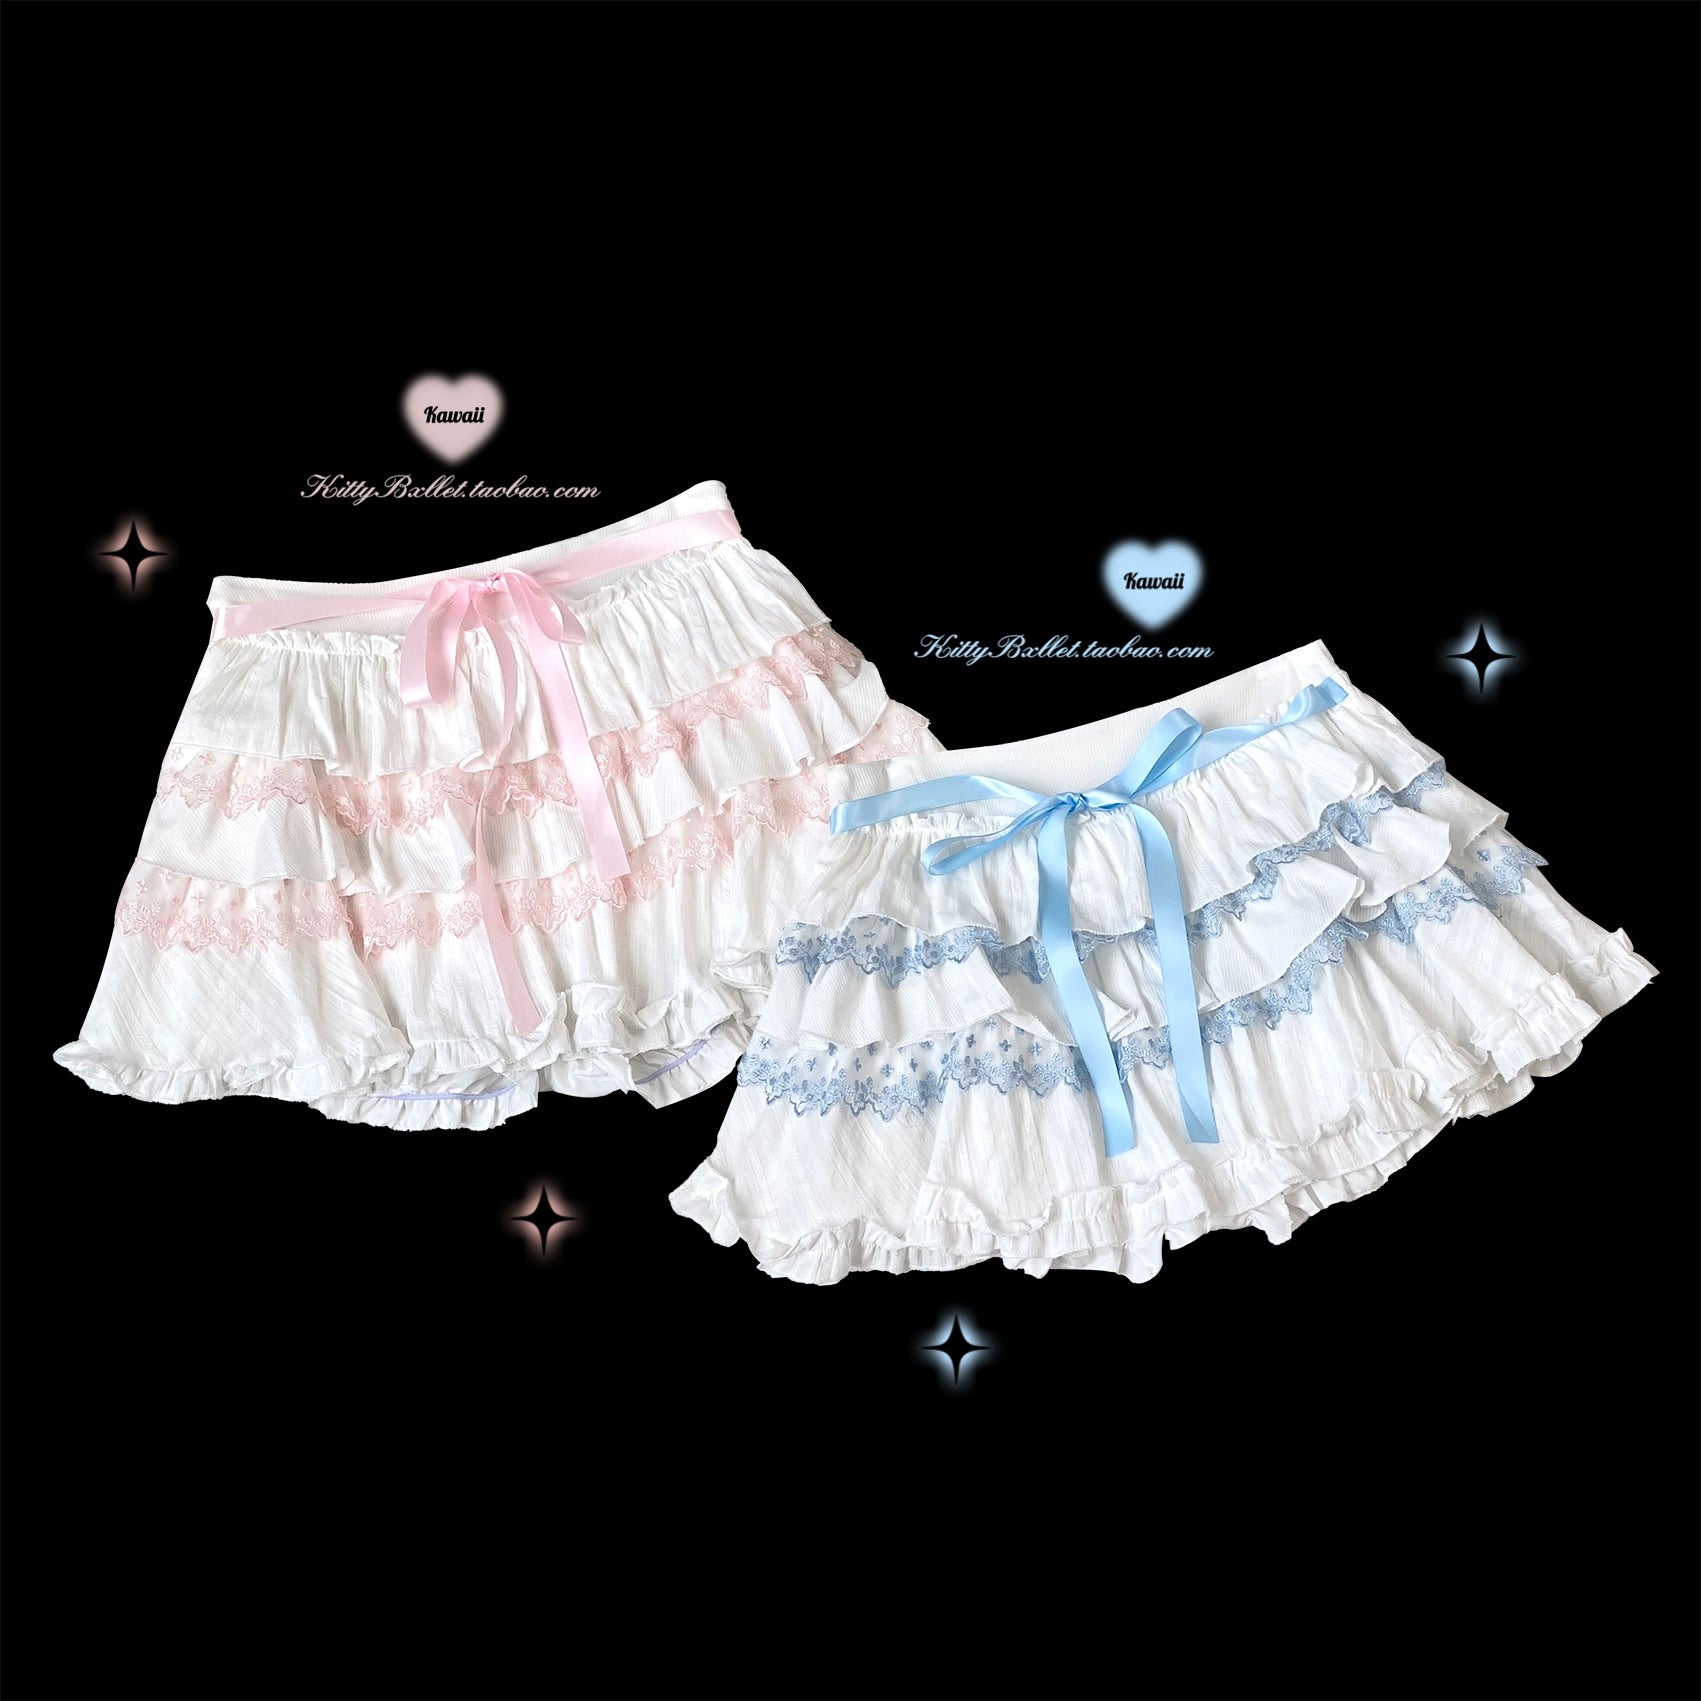 Ryousangata Skirt Lace Cake Skirt And Apron Set 36790:536142